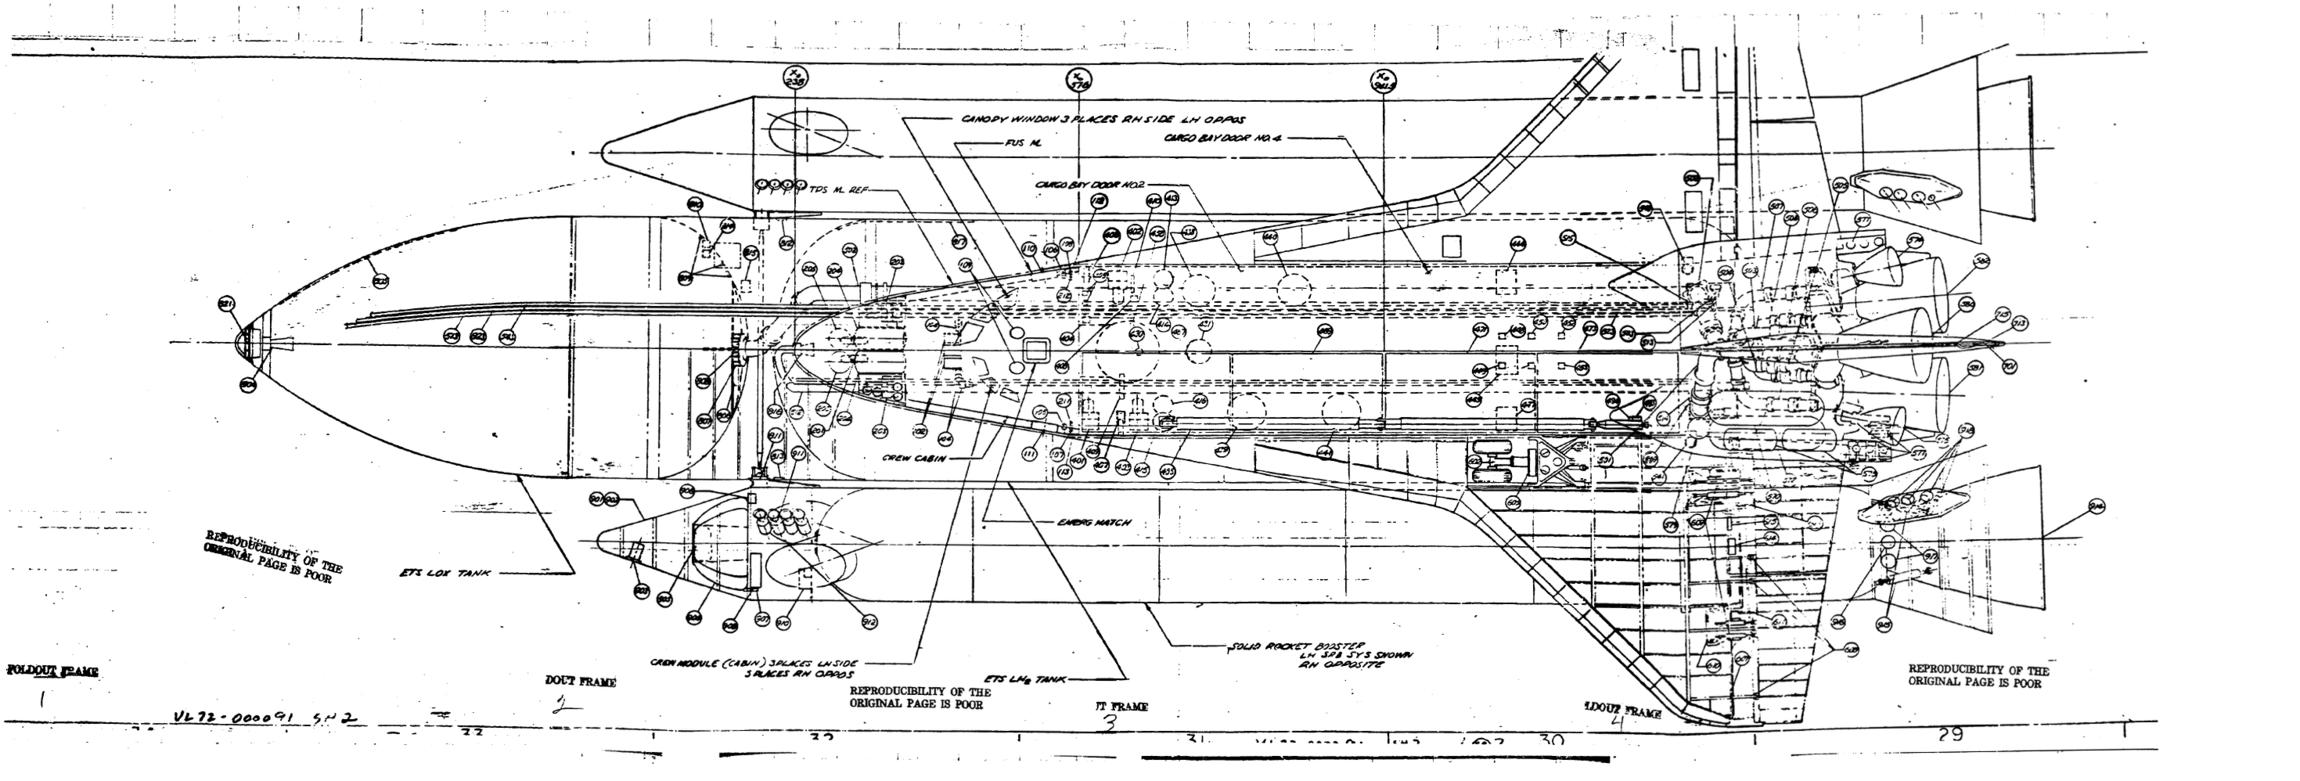 nasa rocket tank blueprints